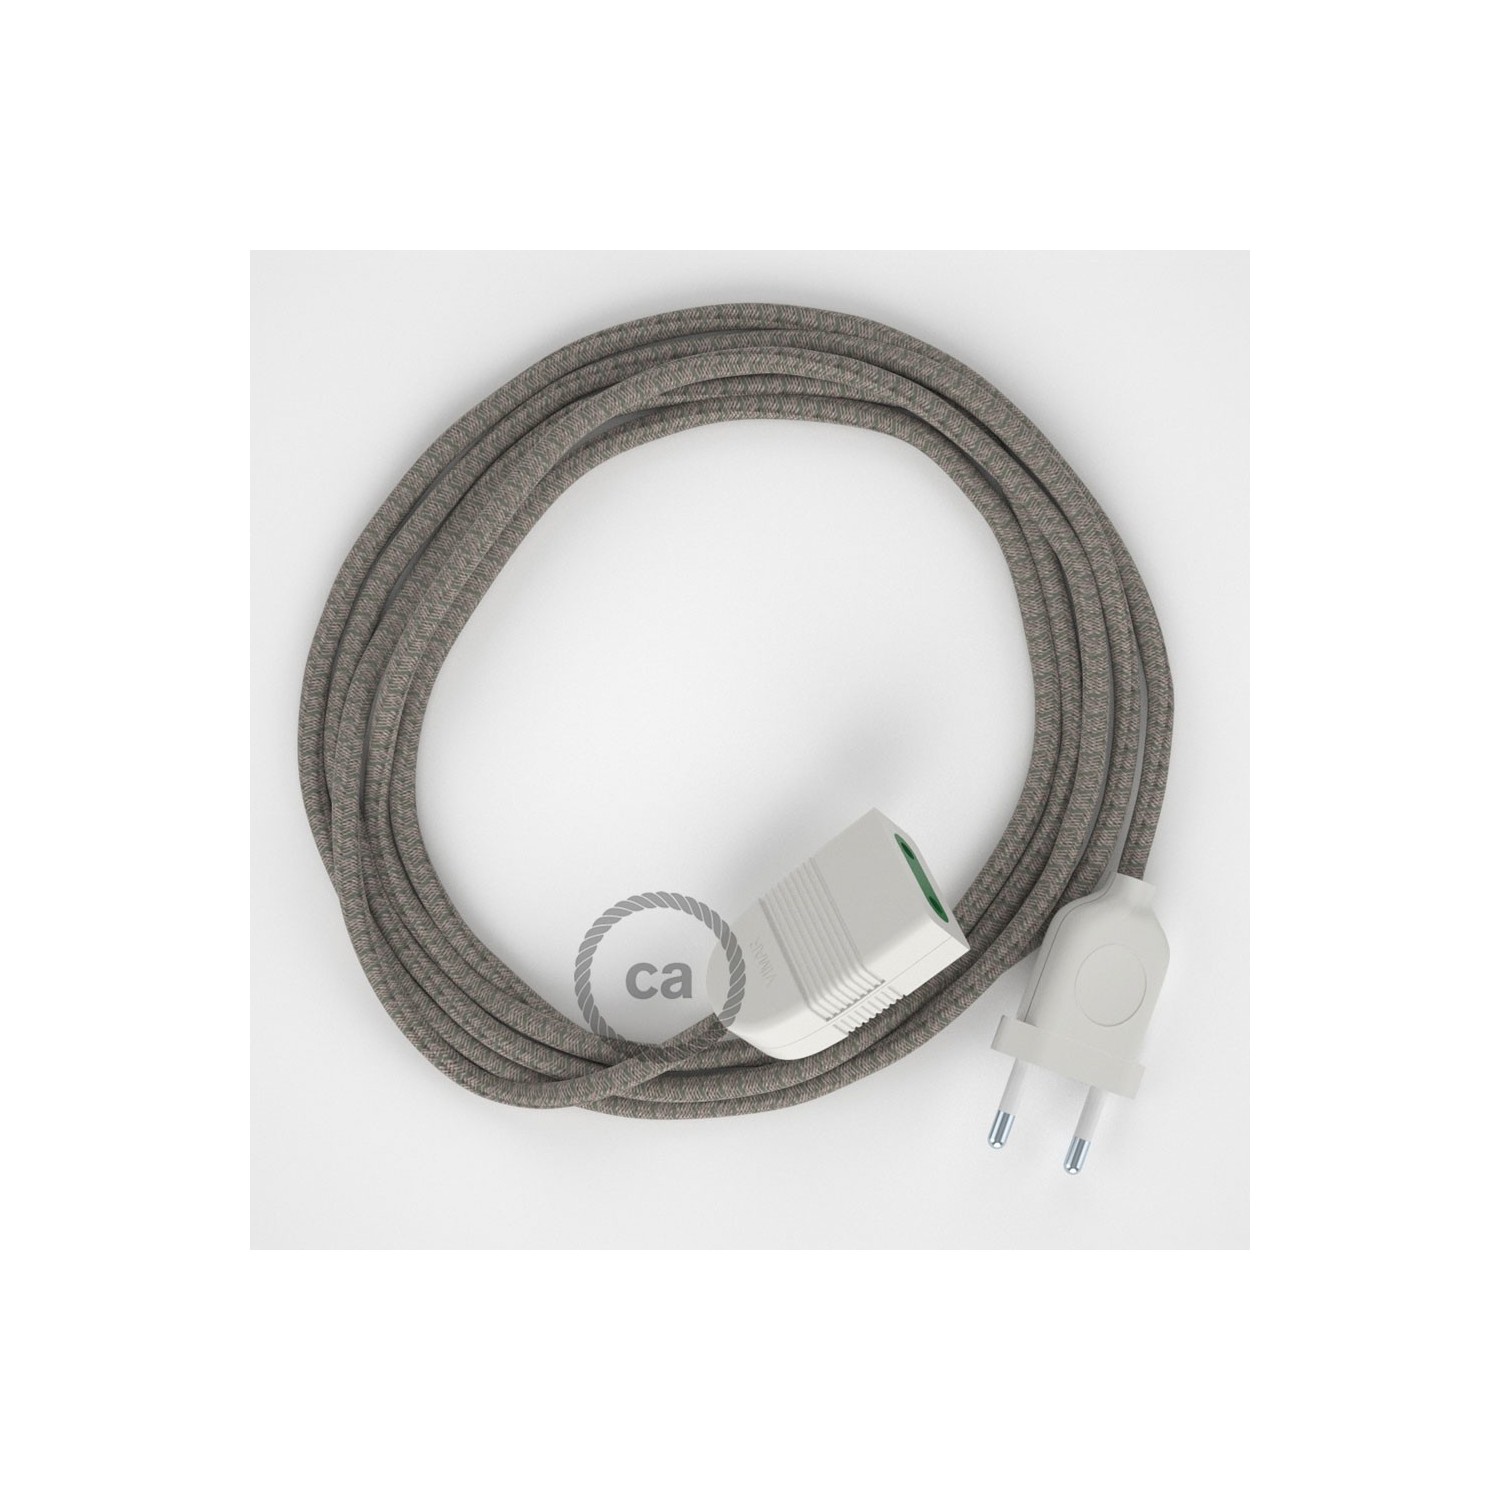 Podaljševalni kabel za napajanje (2P 10A) romb, timijan zeleni naravni lan in bombaž RD62 - Made in Italy